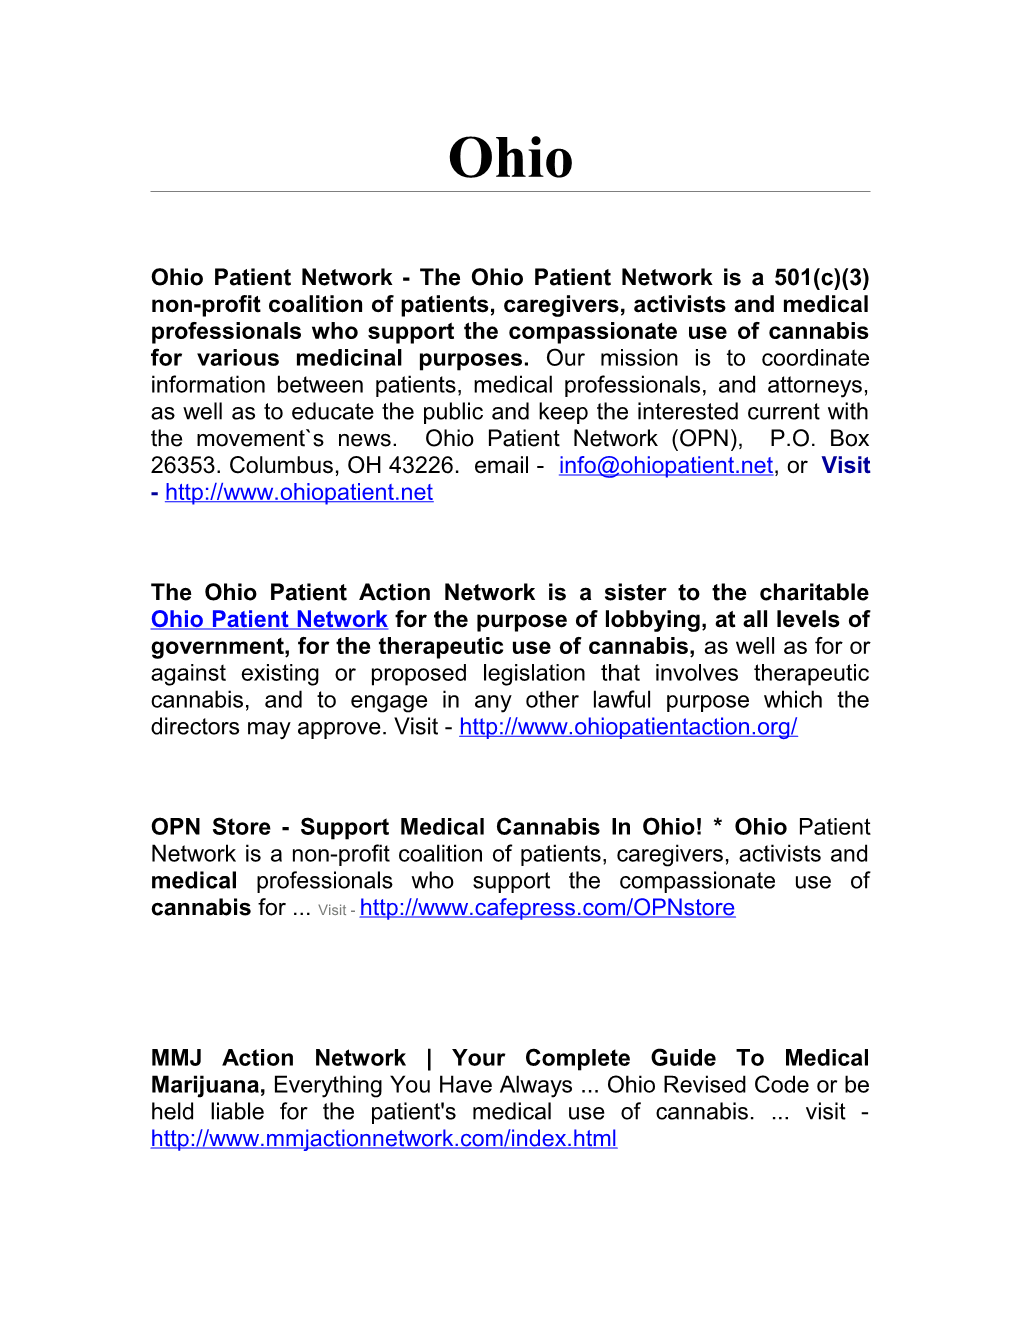 Ohio Patient Network - the Ohio Patient Network Is a 501(C)(3) Non-Profit Coalition Of